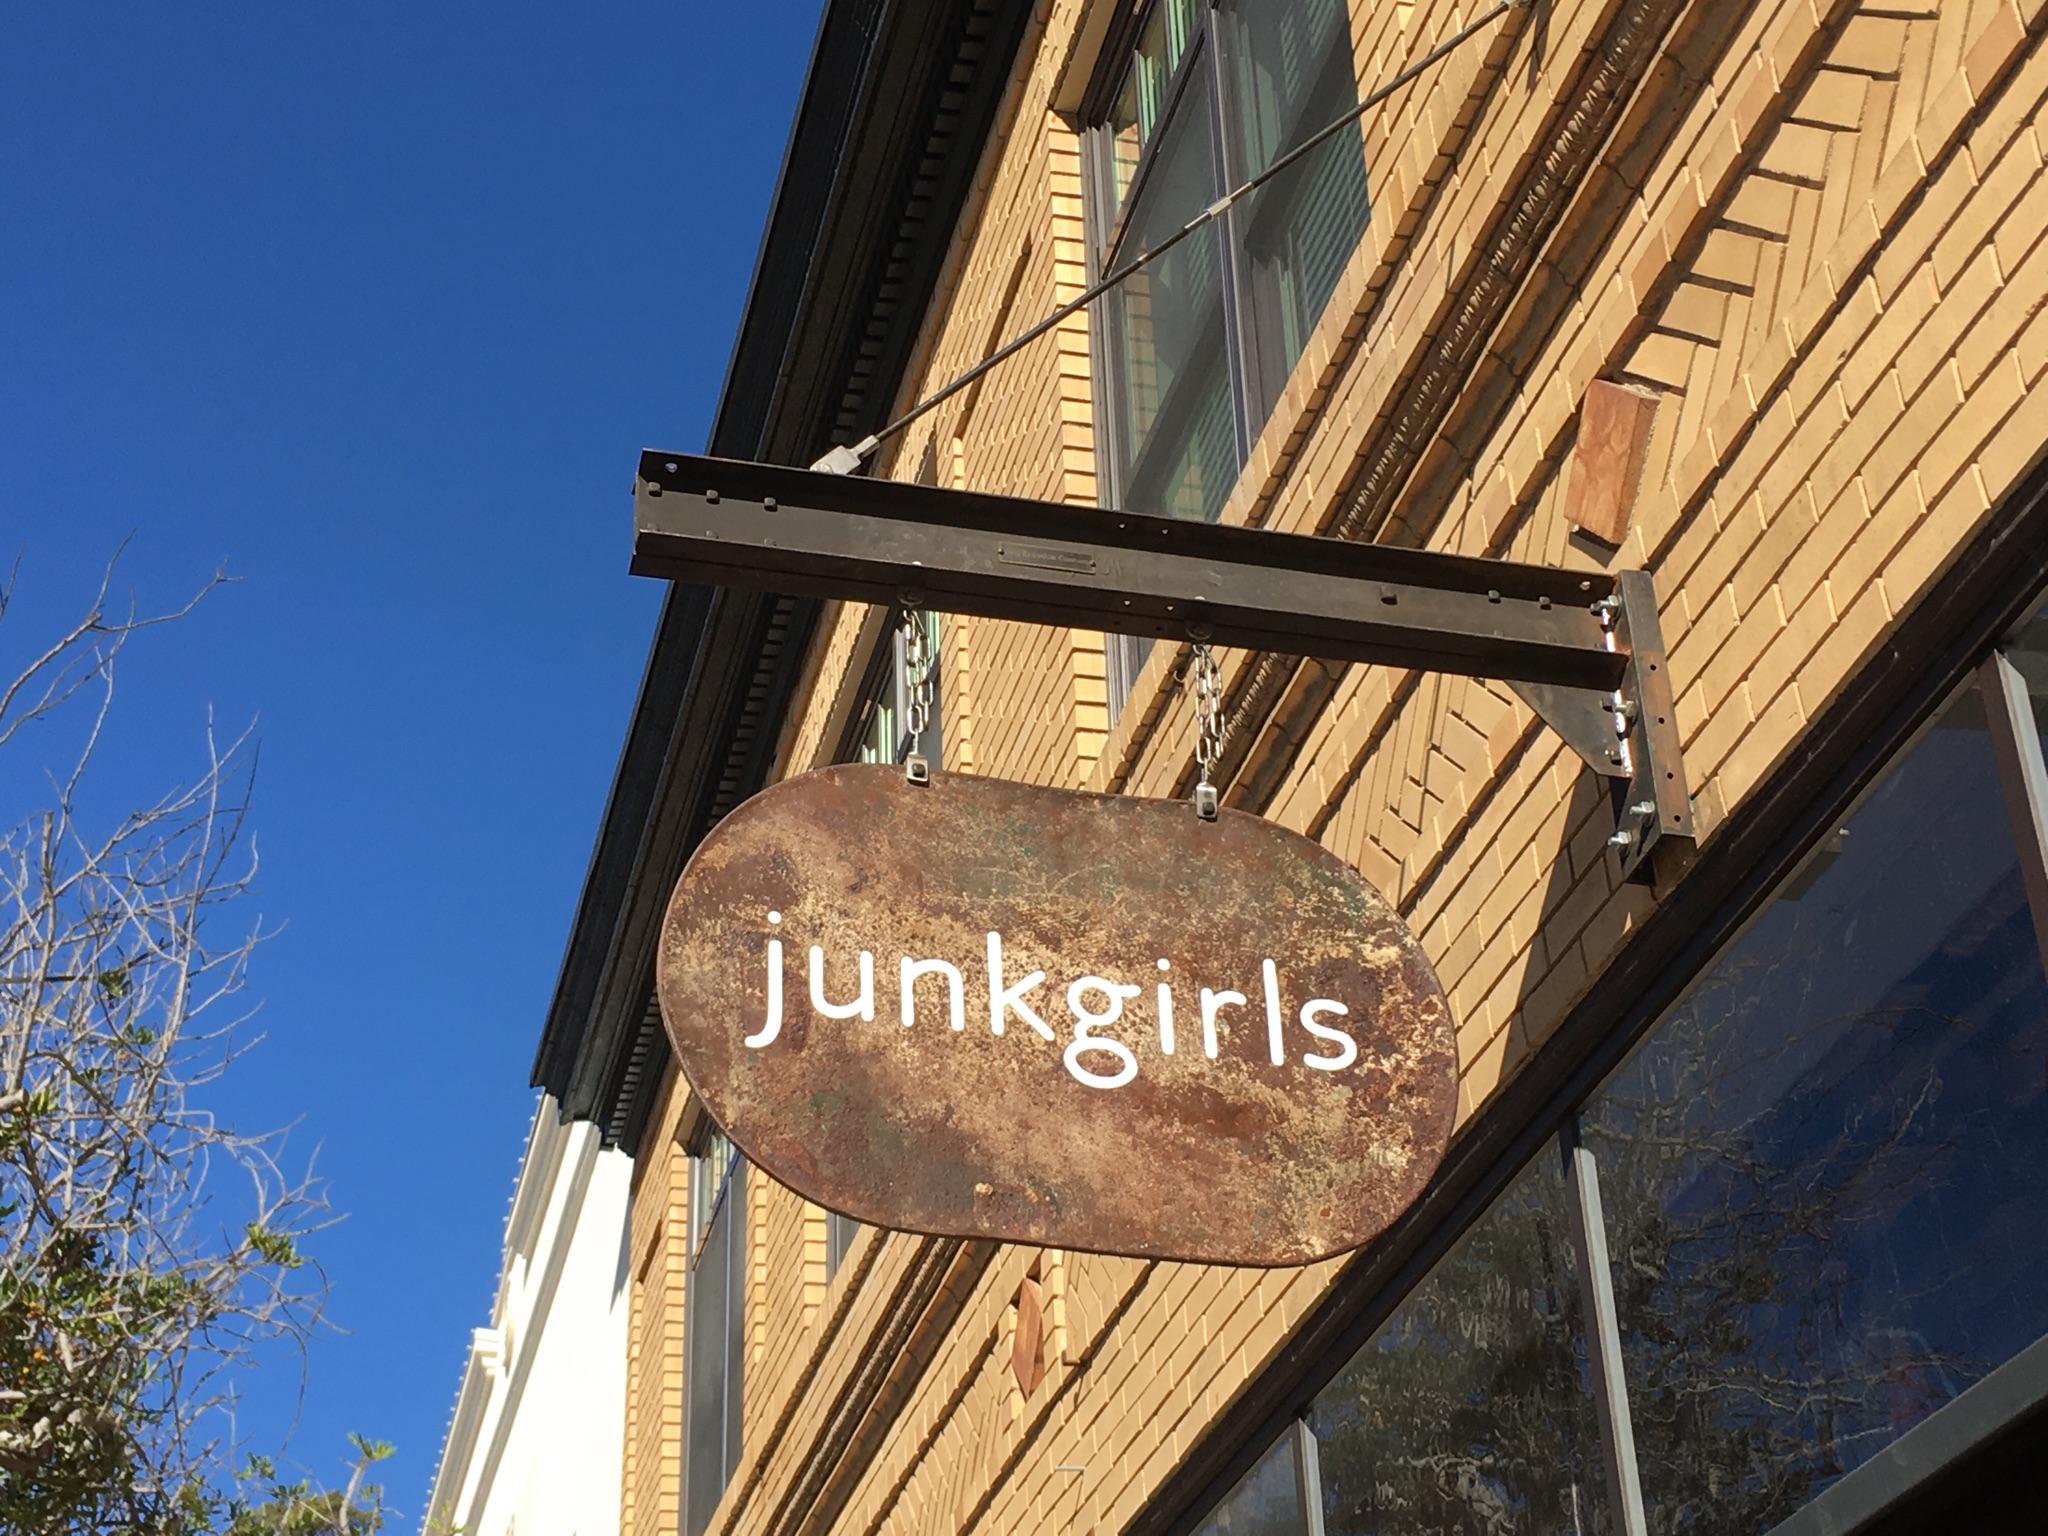 Junkgirls Workshop with Jenny K: 01-25-2020